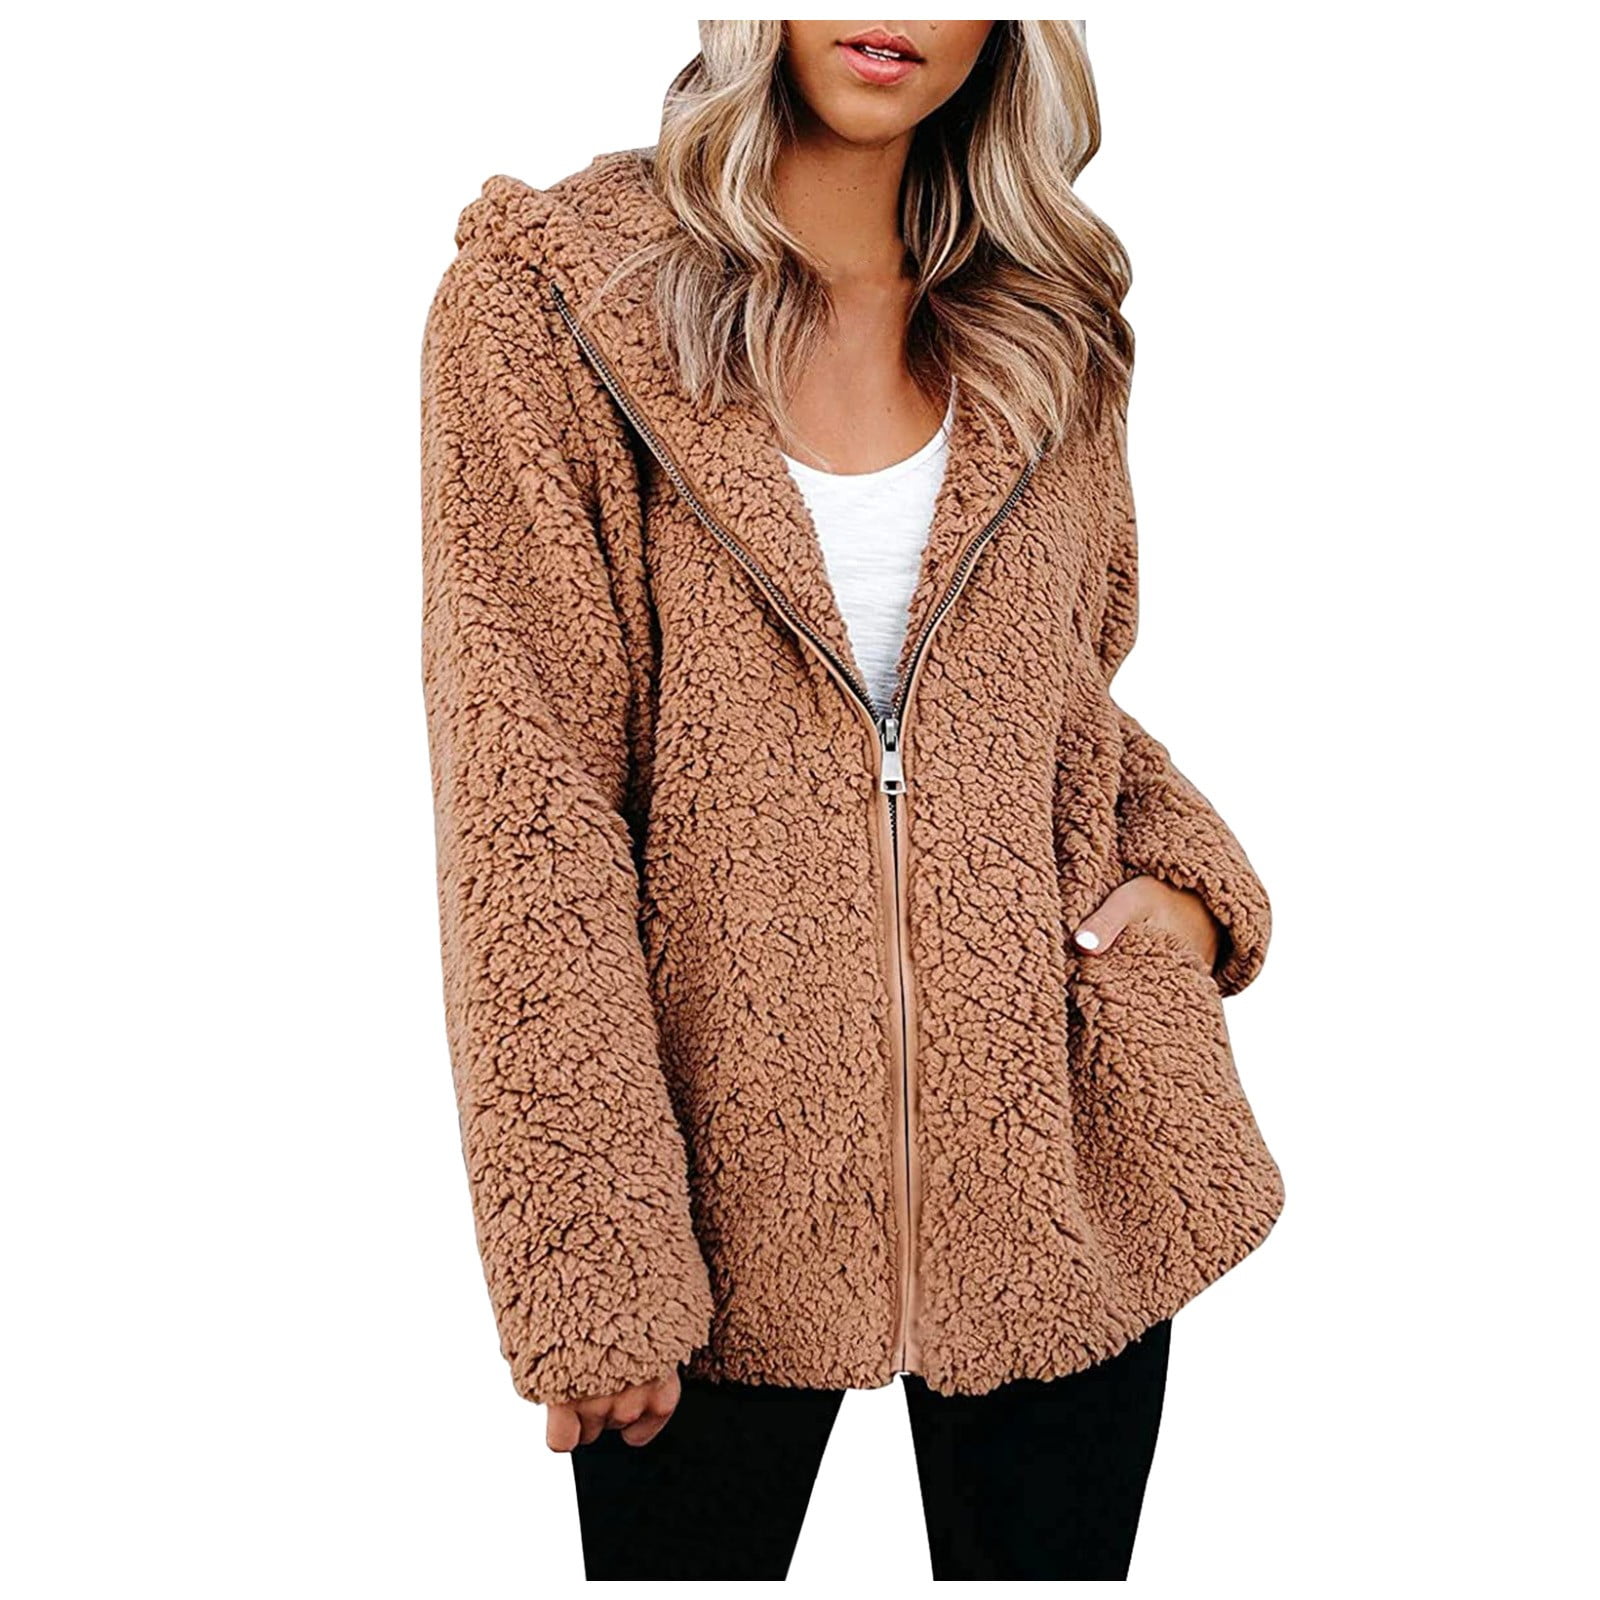 Women Fuzzy Fleece Jacket Trendy Print Oversized Faux Shearling Shaggy Hooded Jacket Coat with Pockets Winter Warm Outwear 